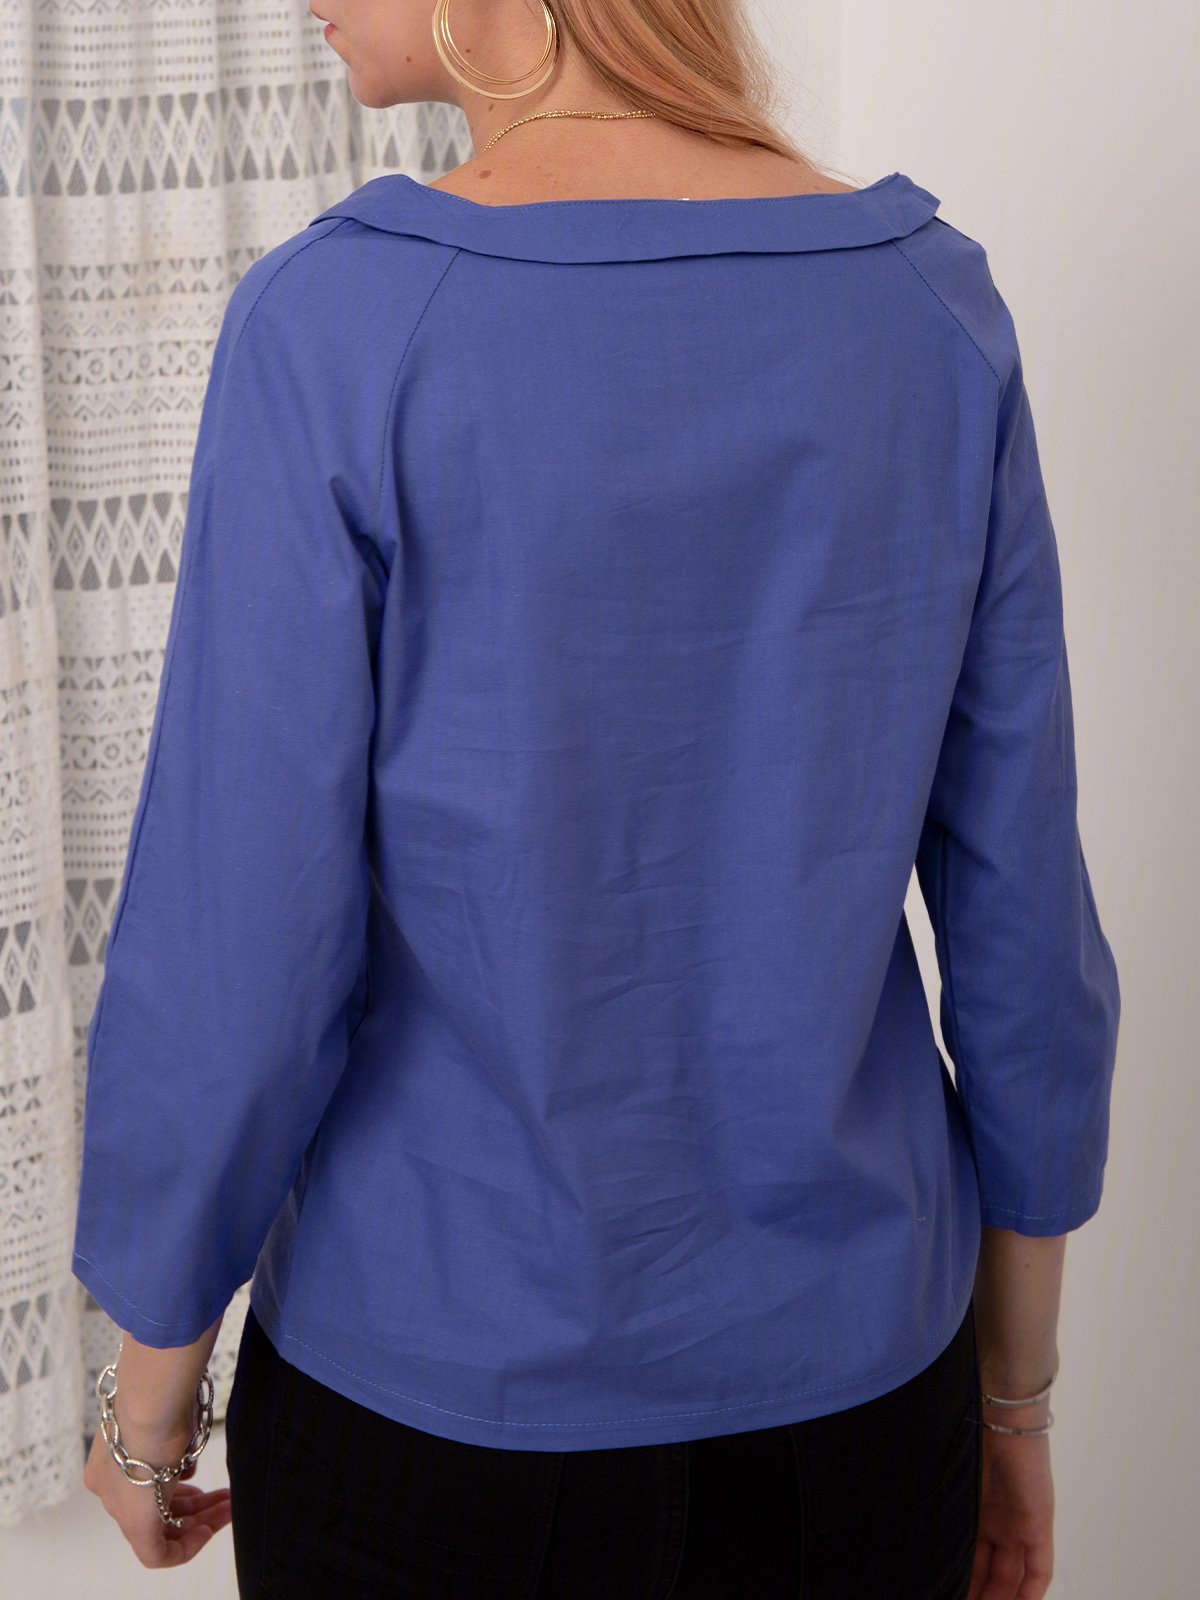 Women's Shirt Blouse Linen Cotton Plain Peter Pan Collar Button Long Sleeve Daily Weekend Casual Shirt Collar Regular